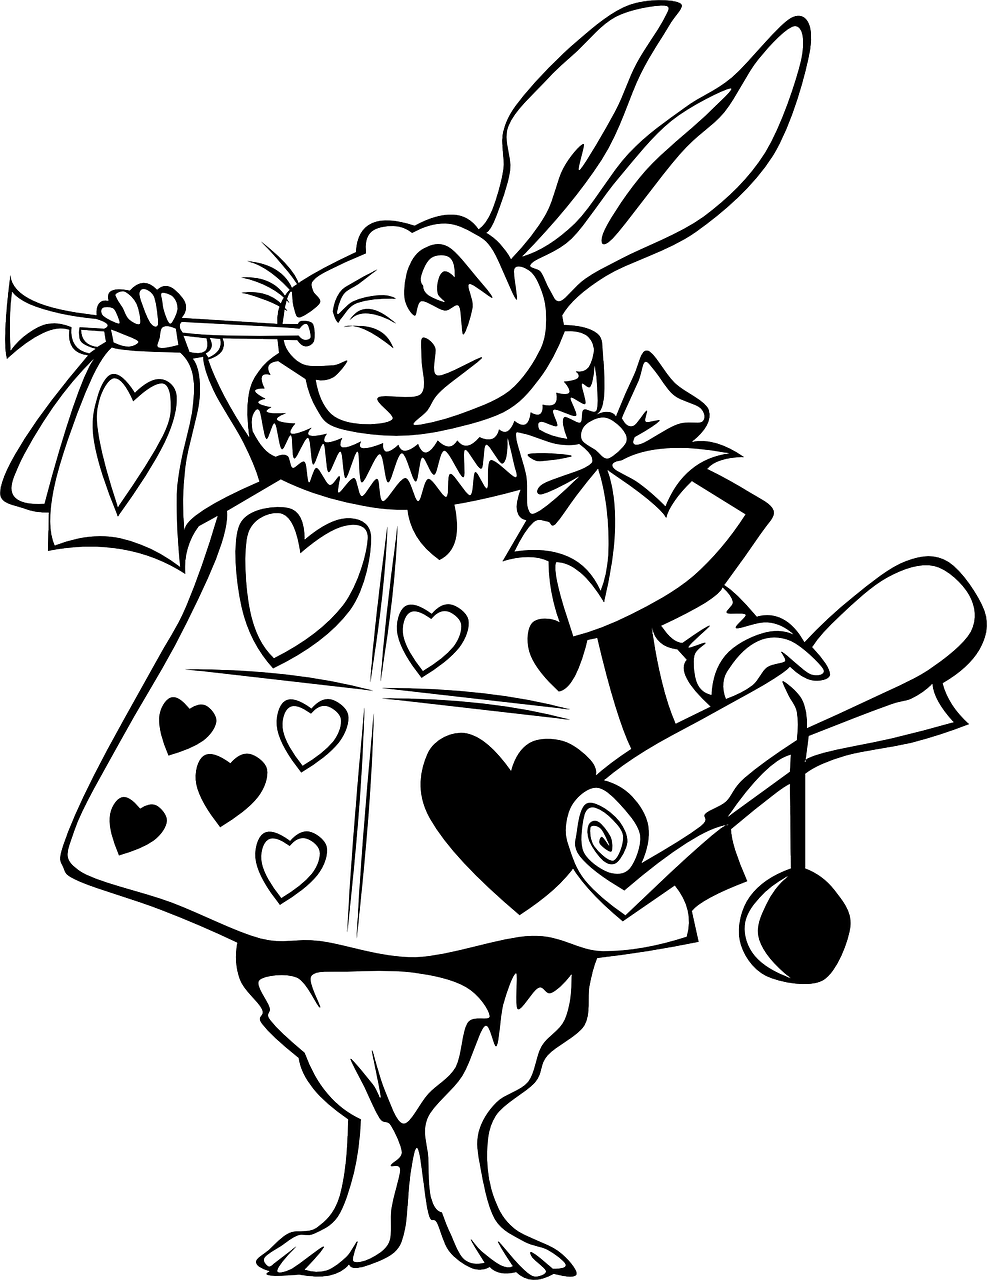 Download PNG image - Alice In Wonderland Rabbit Transparent Images PNG 